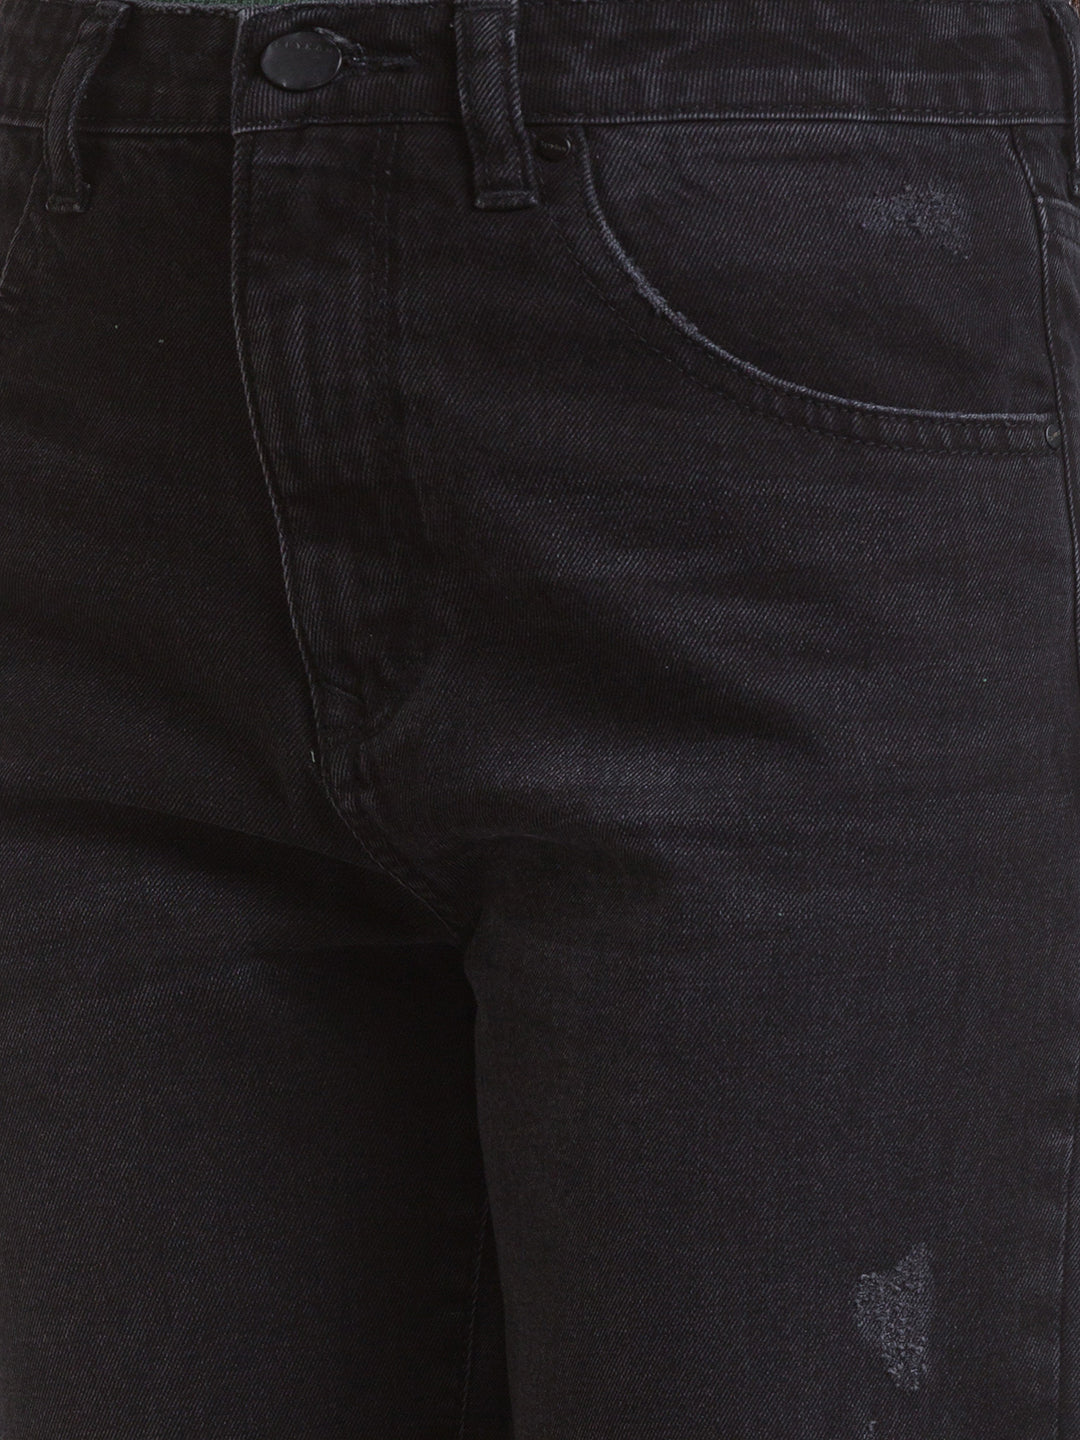 Spykar Black Cotton Straight Fit Regular Length Jeans For Women